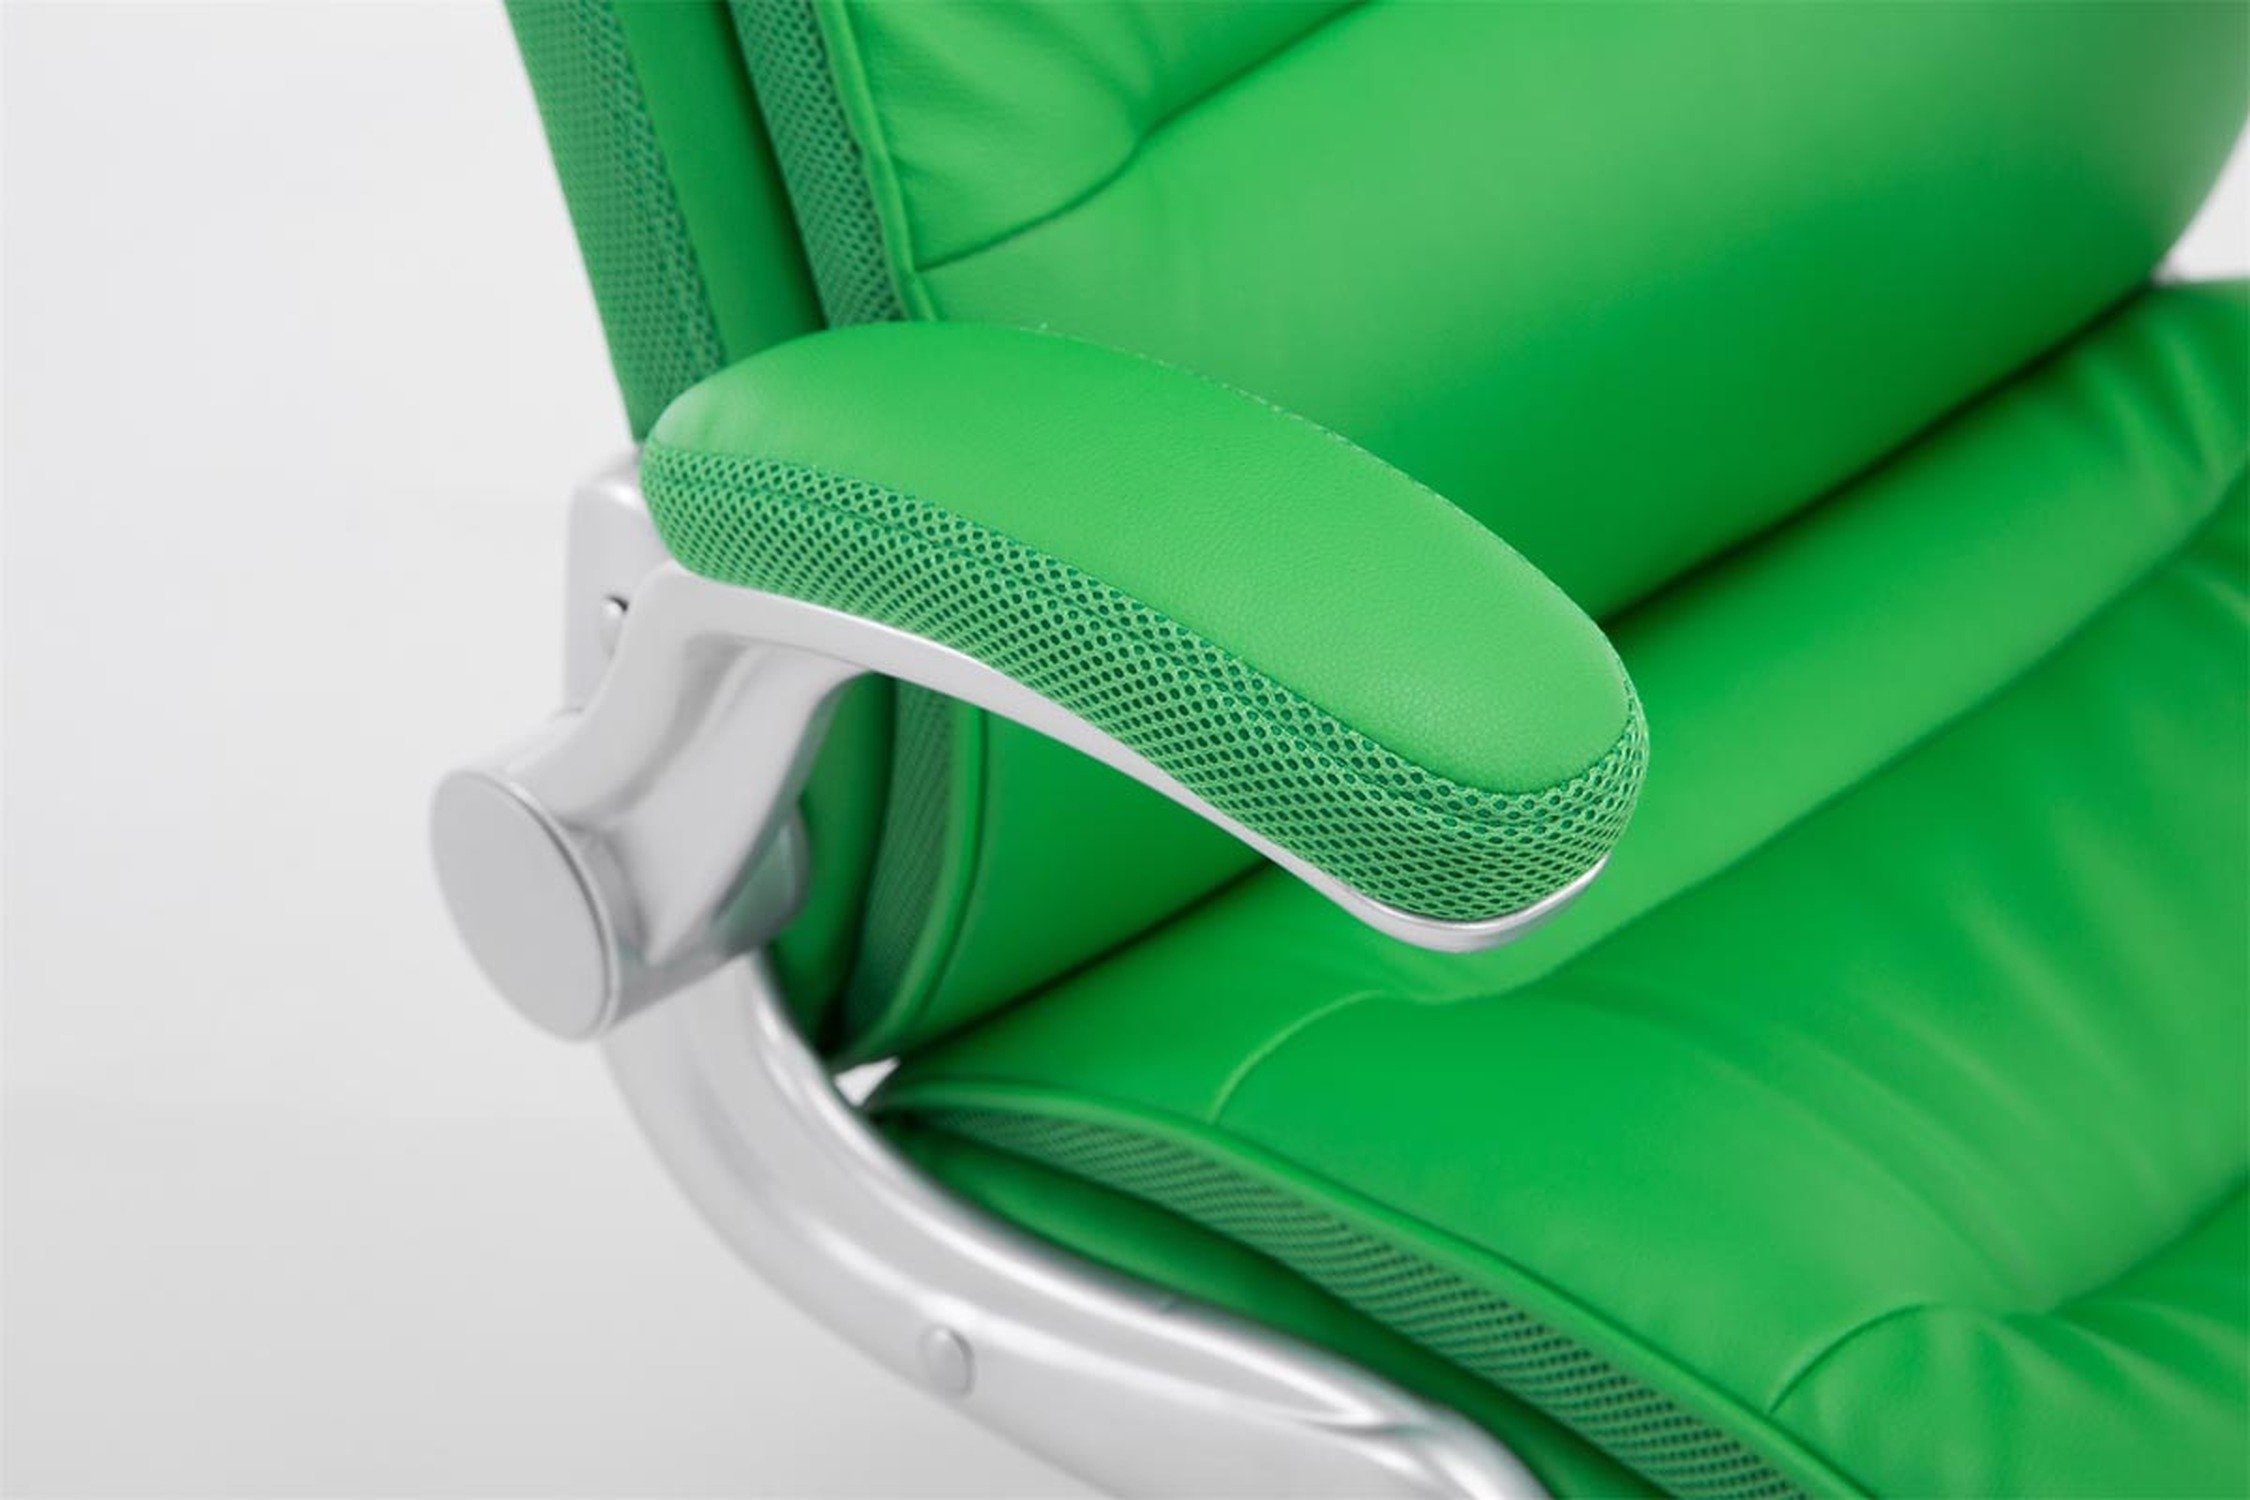 TPFLiving Bürostuhl Vila Chefsessel, grün ergonomisch geformter (Schreibtischstuhl, Bürostuhl bequemer silber Rückenlehne Drehstuhl, XXL), Sitzfläche: Kunststoff Kunstleder mit Gestell: 